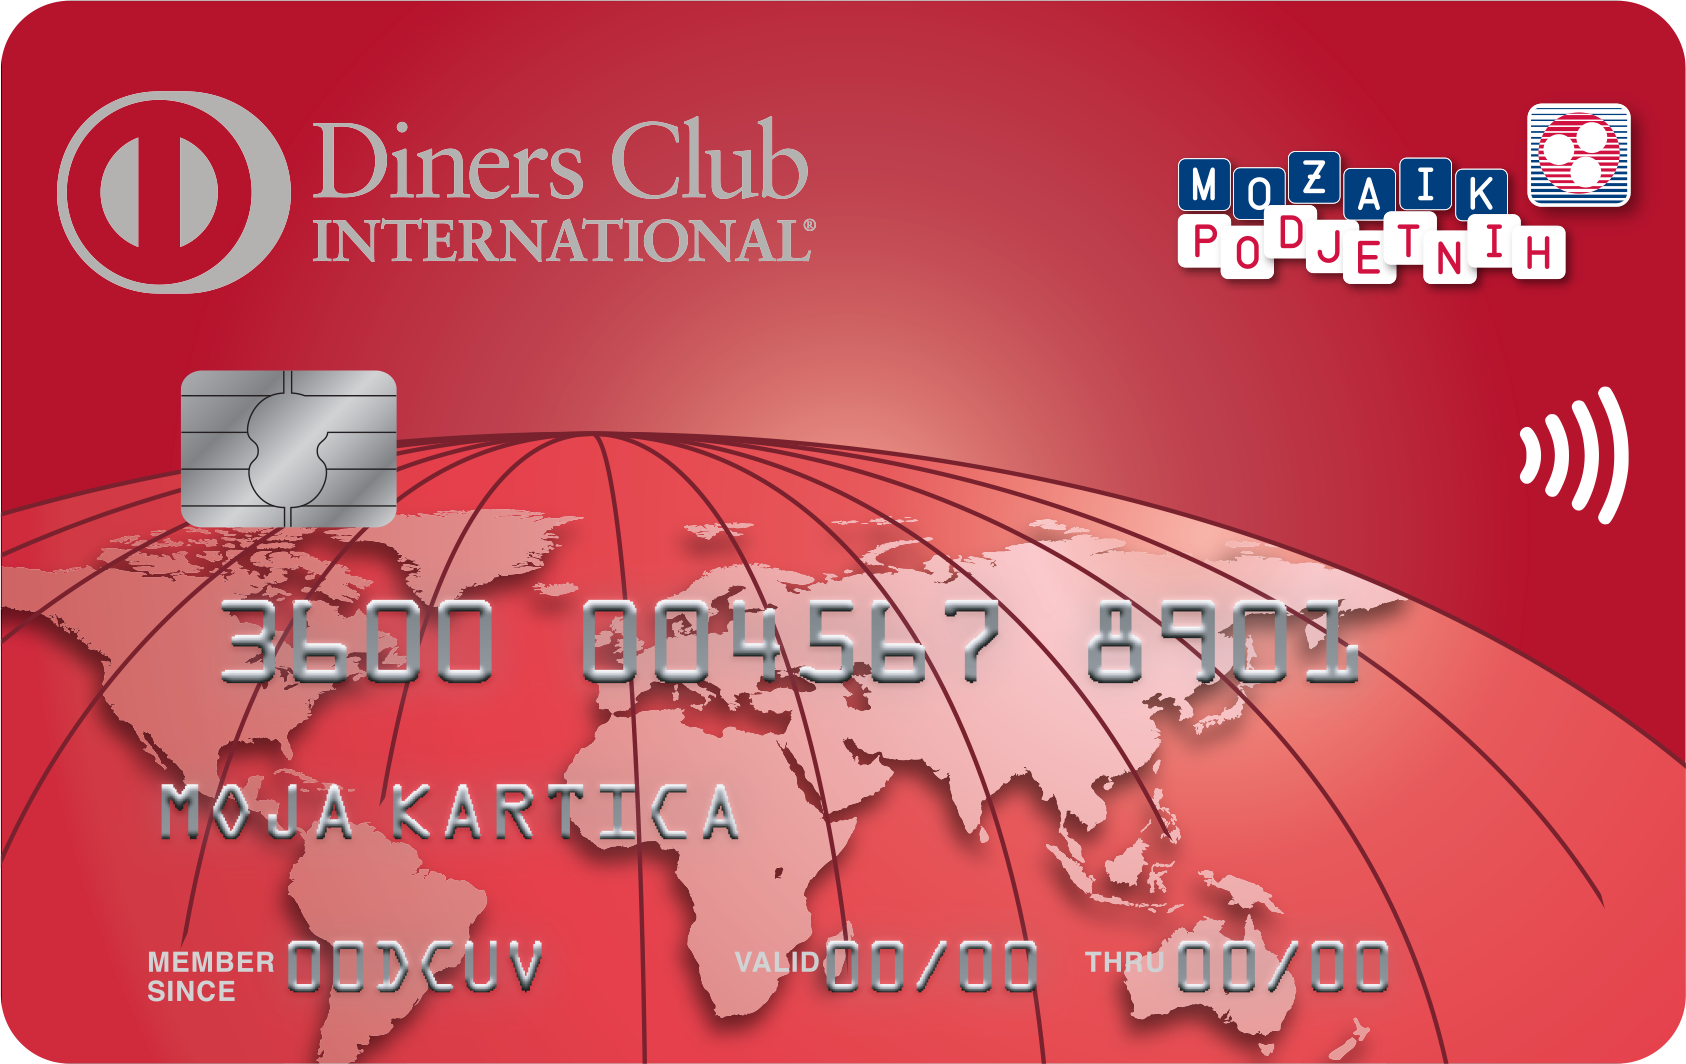 diners club_mozaik podjetnih_poslovna_kartica